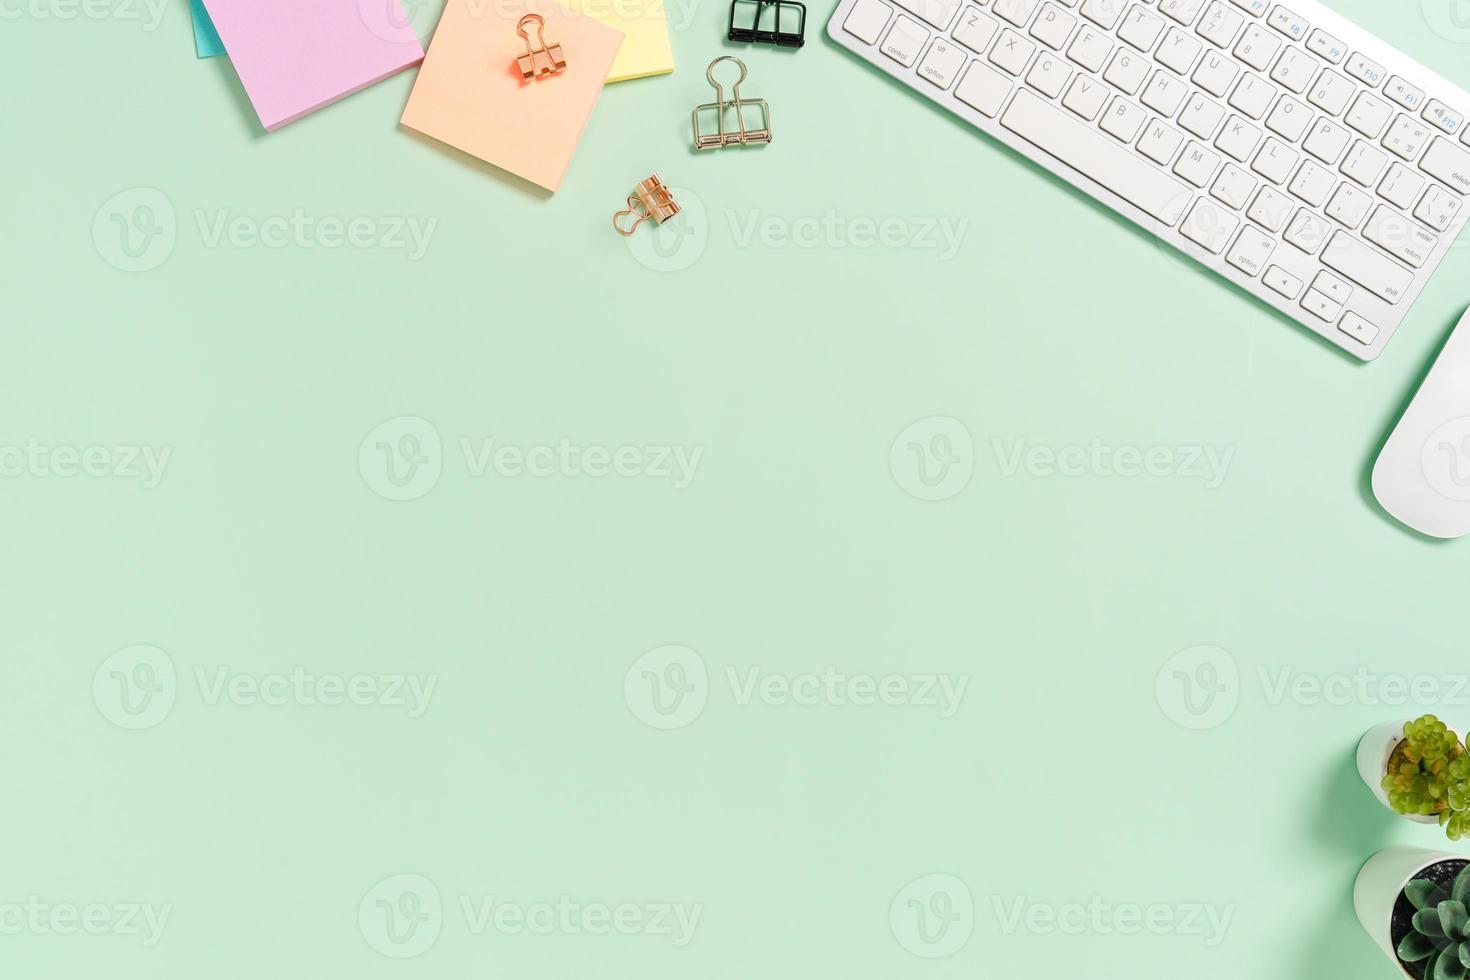 spazio di lavoro minimo - foto creativa piatta della scrivania dell'area di lavoro. scrivania da ufficio vista dall'alto con tastiera, mouse e libro su sfondo di colore verde pastello. vista dall'alto con spazio di copia, fotografia piatta.